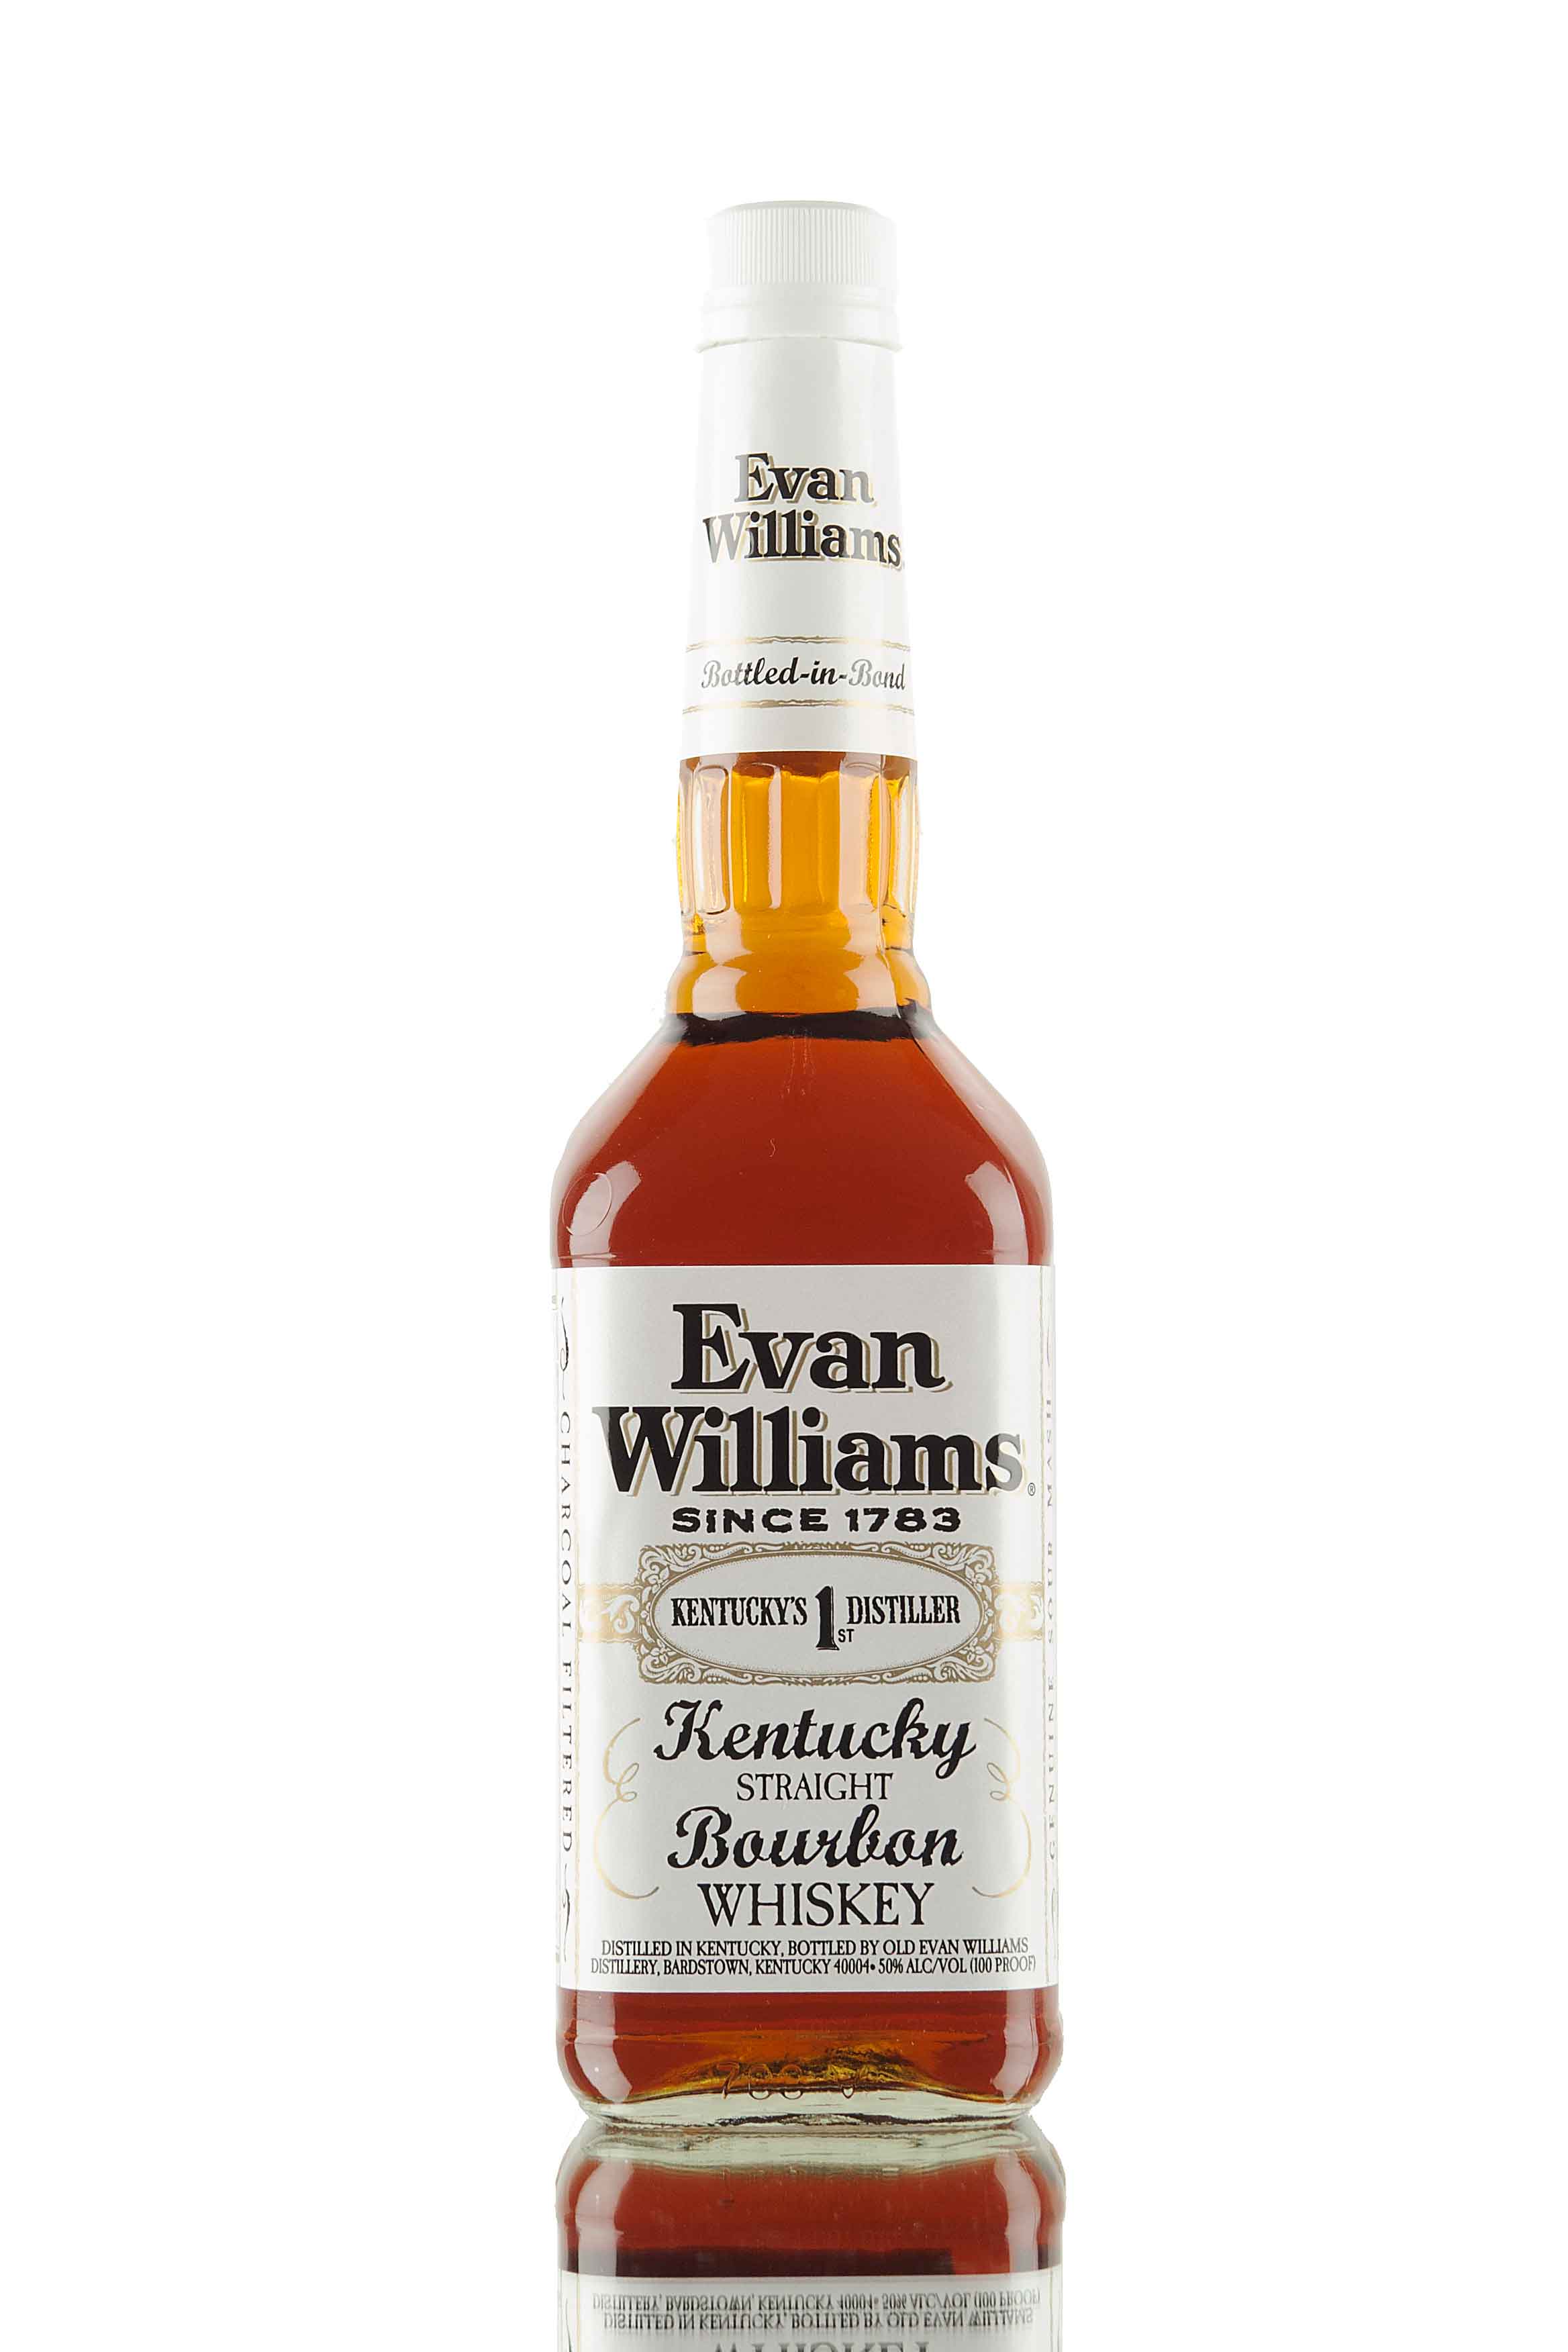 Evan Williams White Label Bottled In Bond